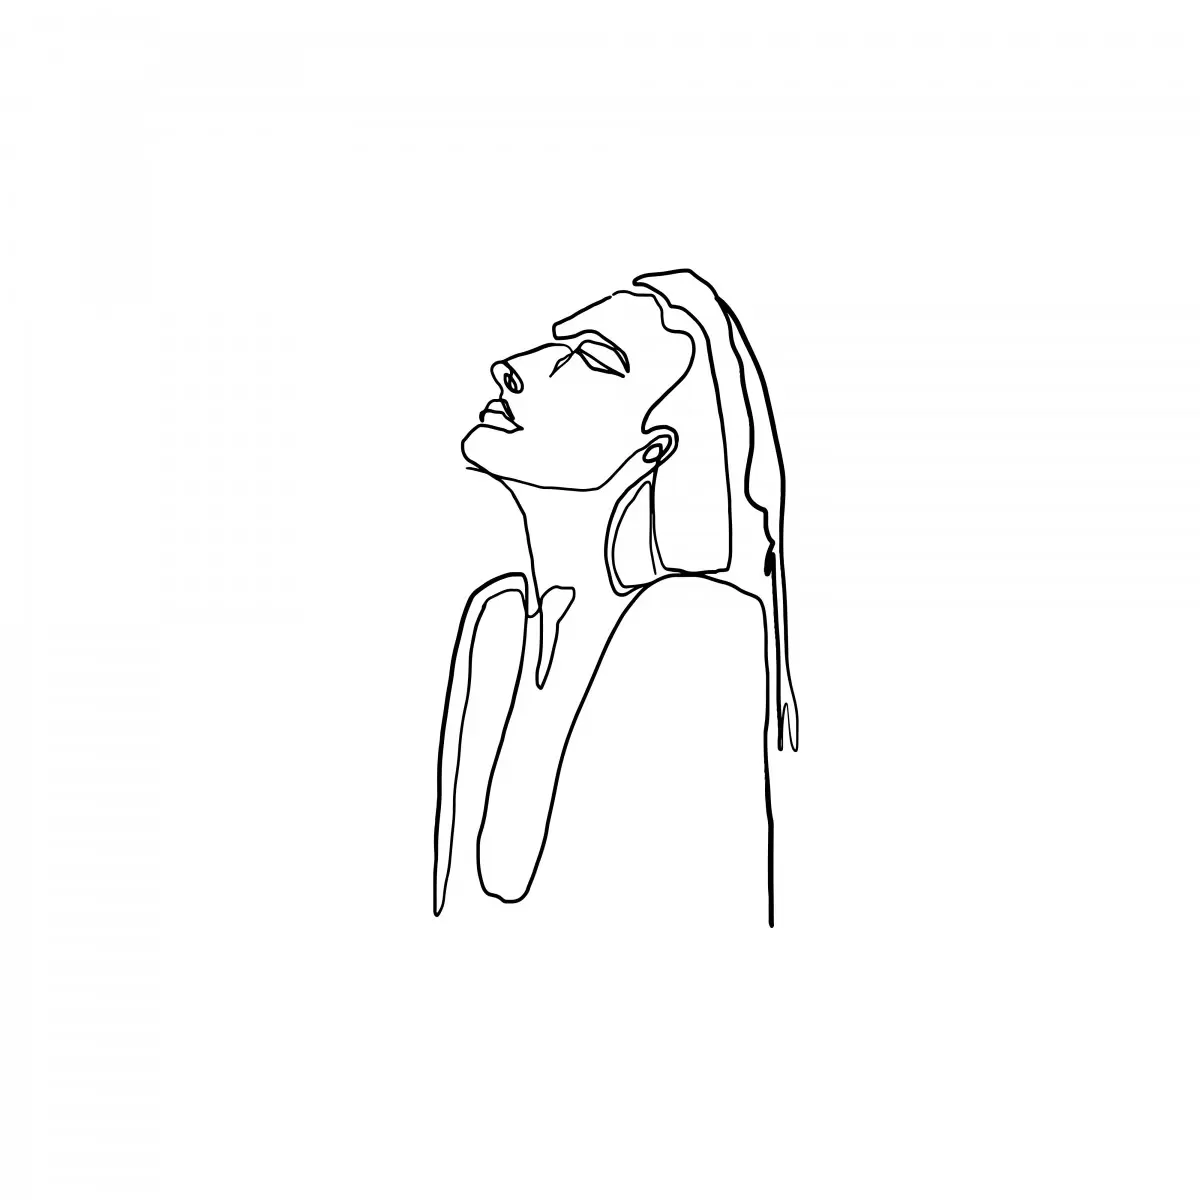 אשה בקו אחד - Artpicked - תמונות נורדיות איור רישום בצבע סטים בסגנון מודרני  - מק''ט: 331108